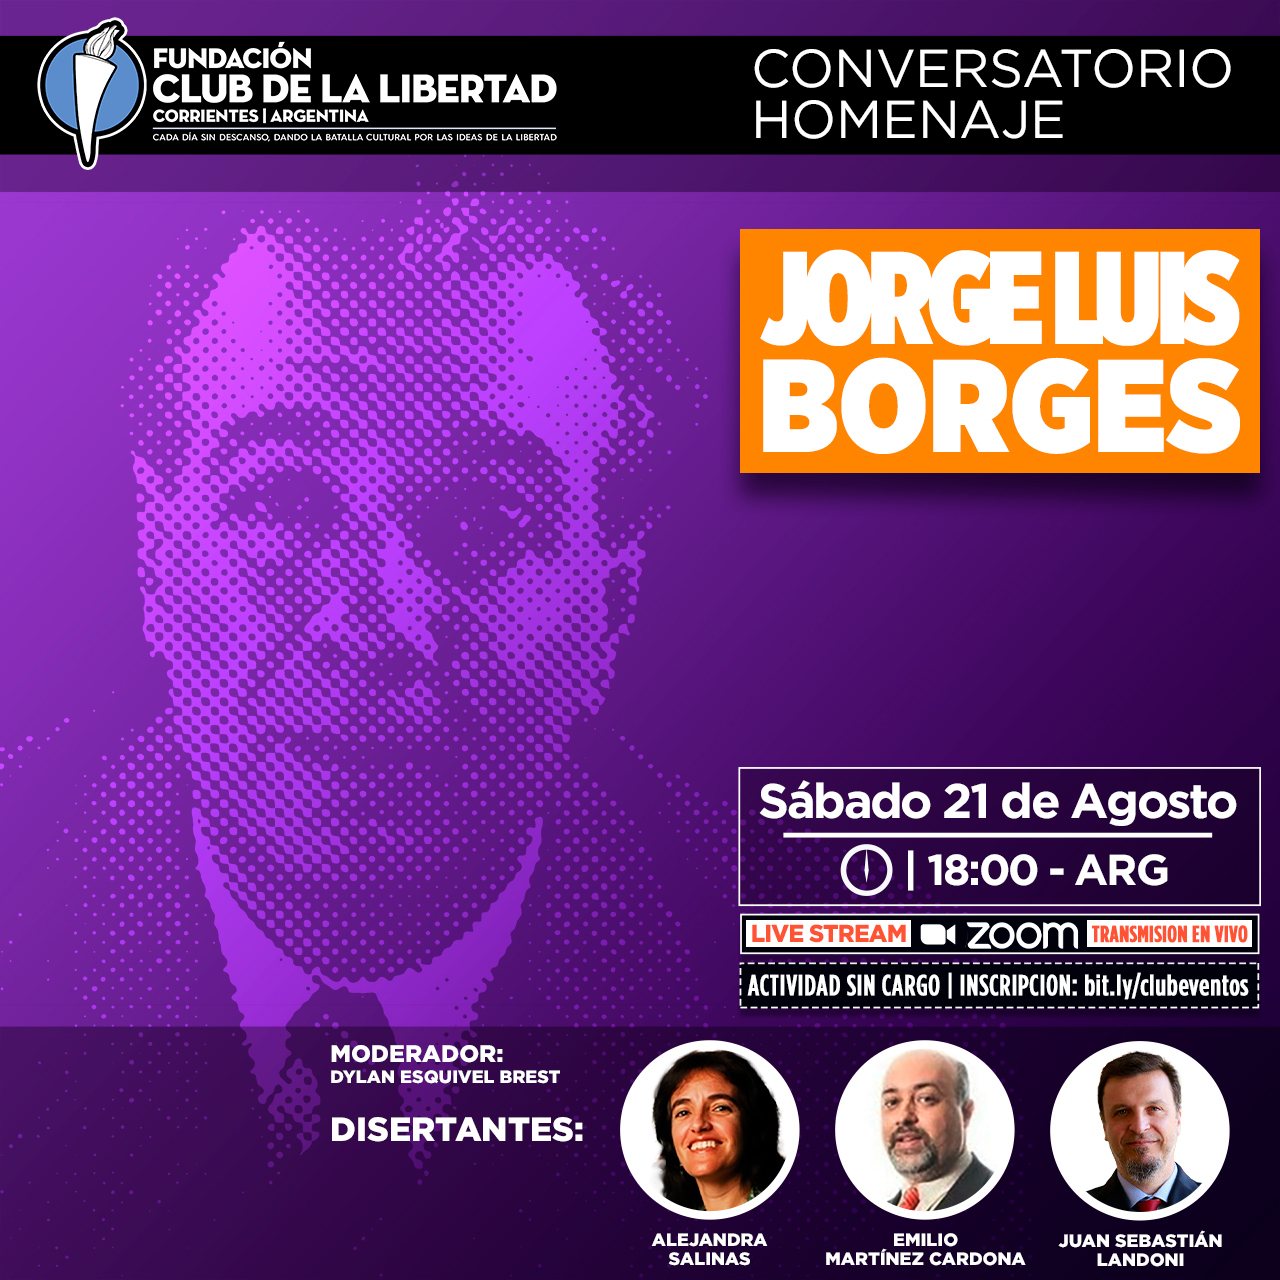 En este momento estás viendo Conversatorio homenaje: Jorge Luis Borges